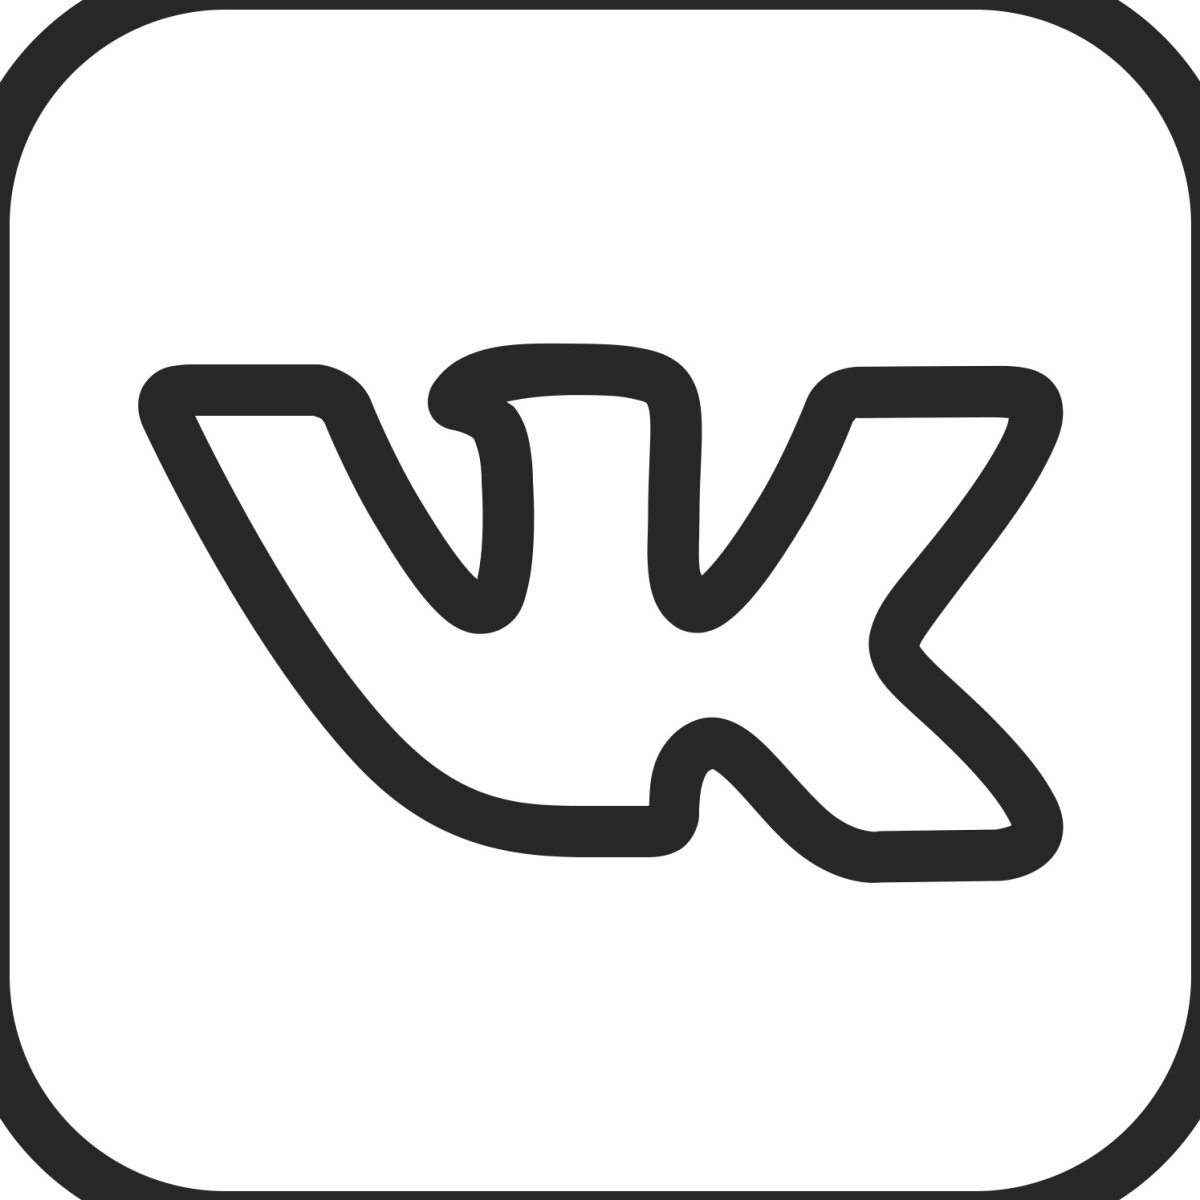 Https vk com atomicrust. Логотип ВК. Значок ВК черный. Иконка ВК маленькая. Значок ВК белый.